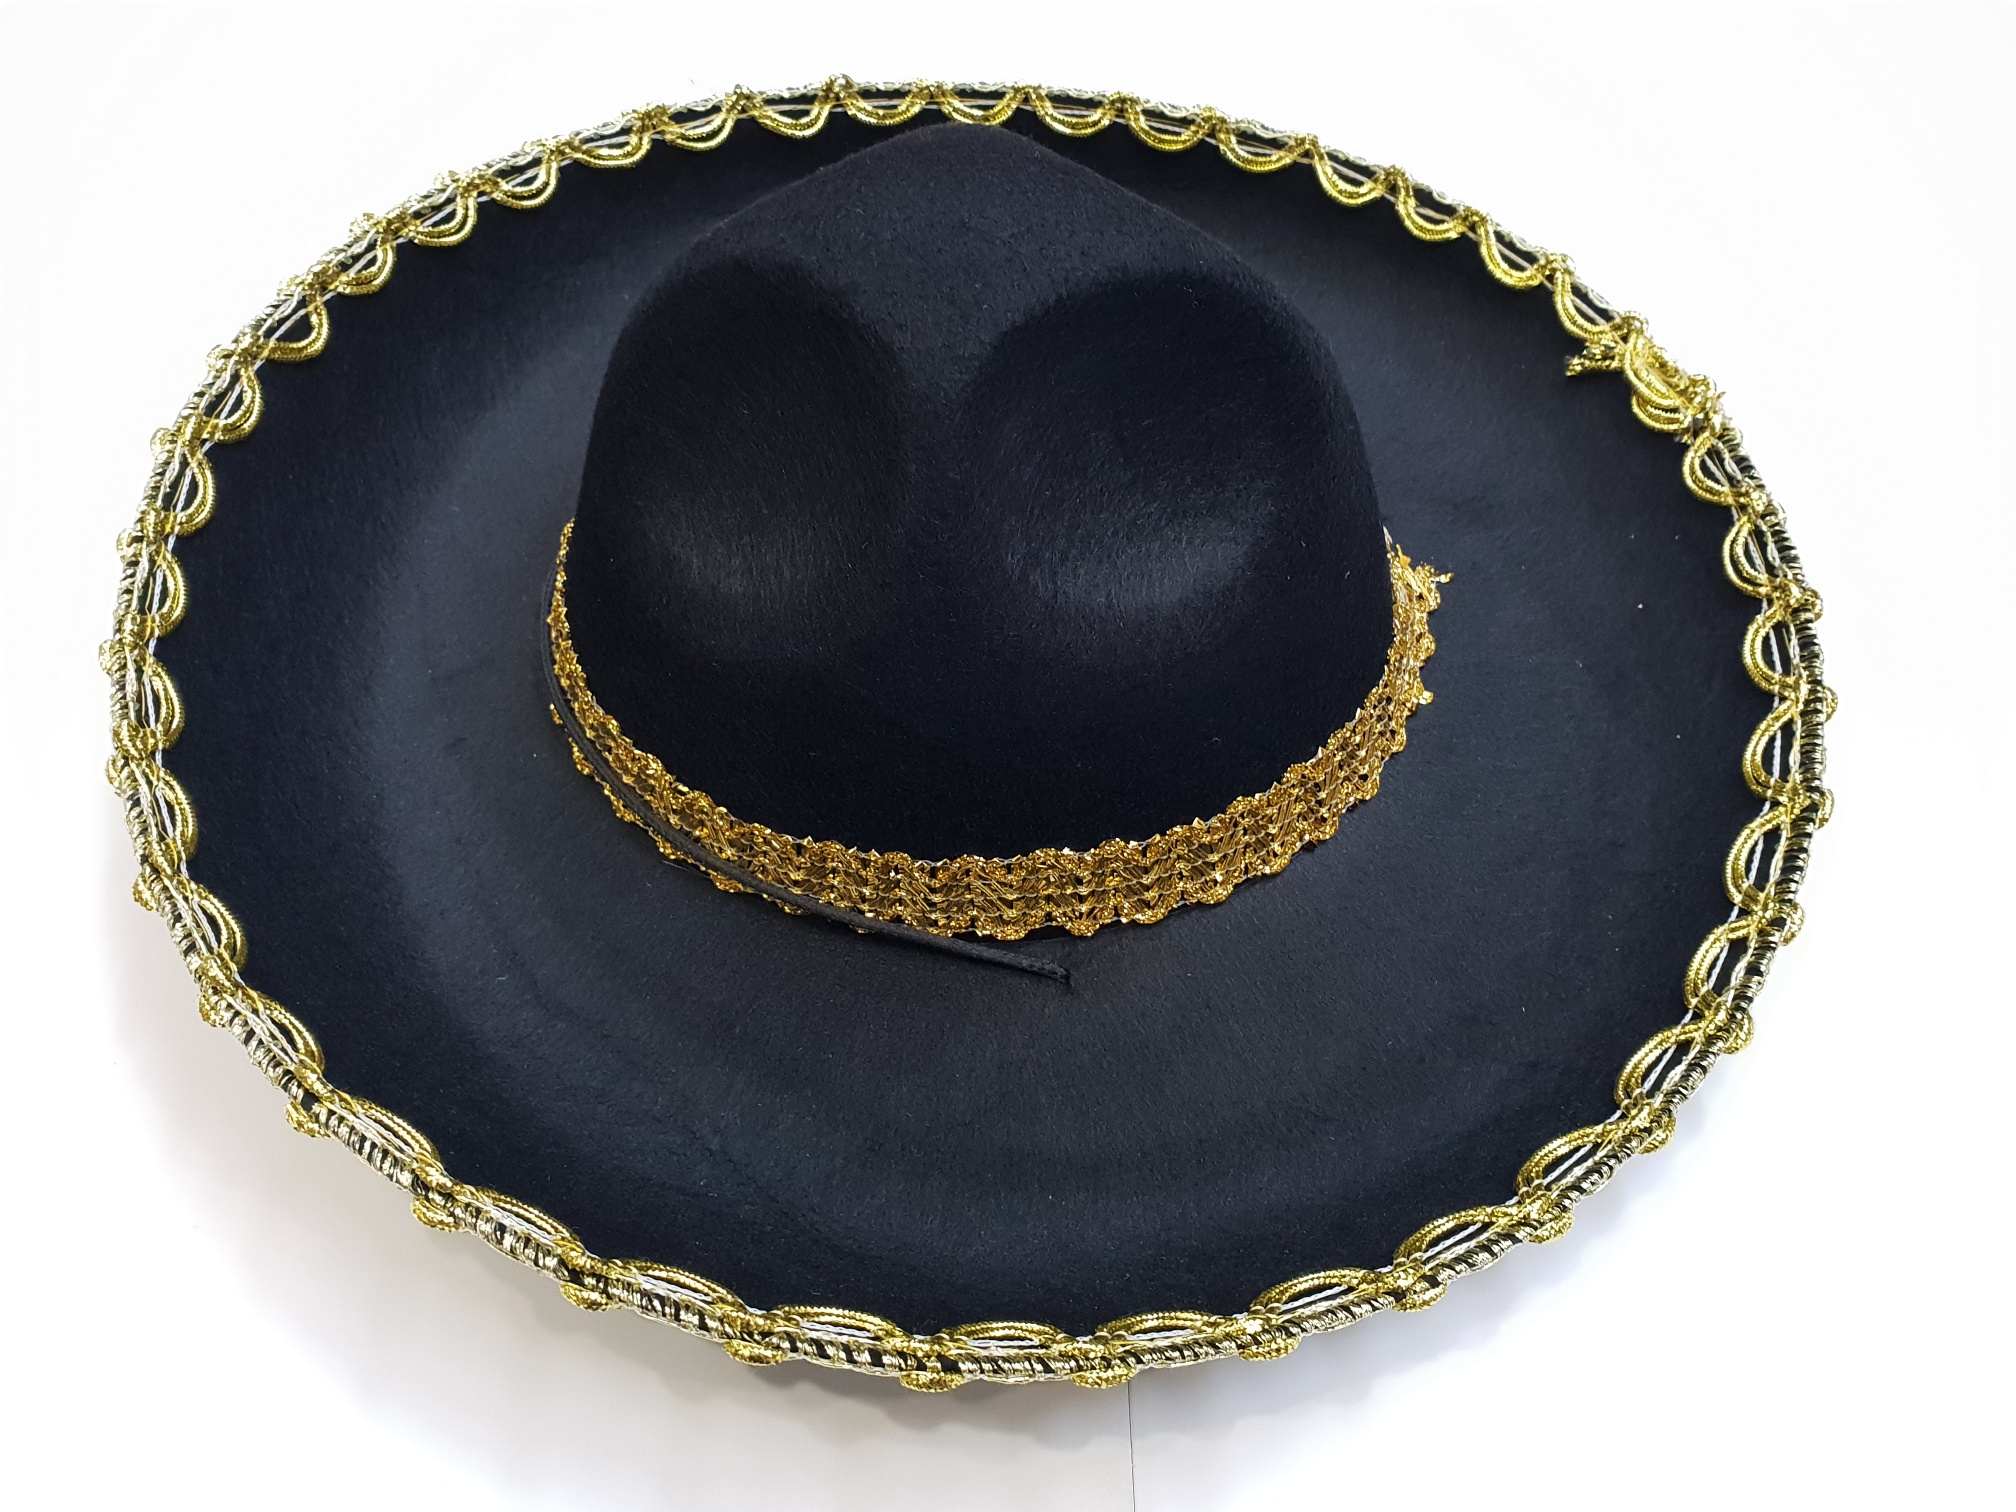 Altın Renk Şeritli Meksika Mariachi Latin Şapkası 55 cm Çocuk (CLZ)